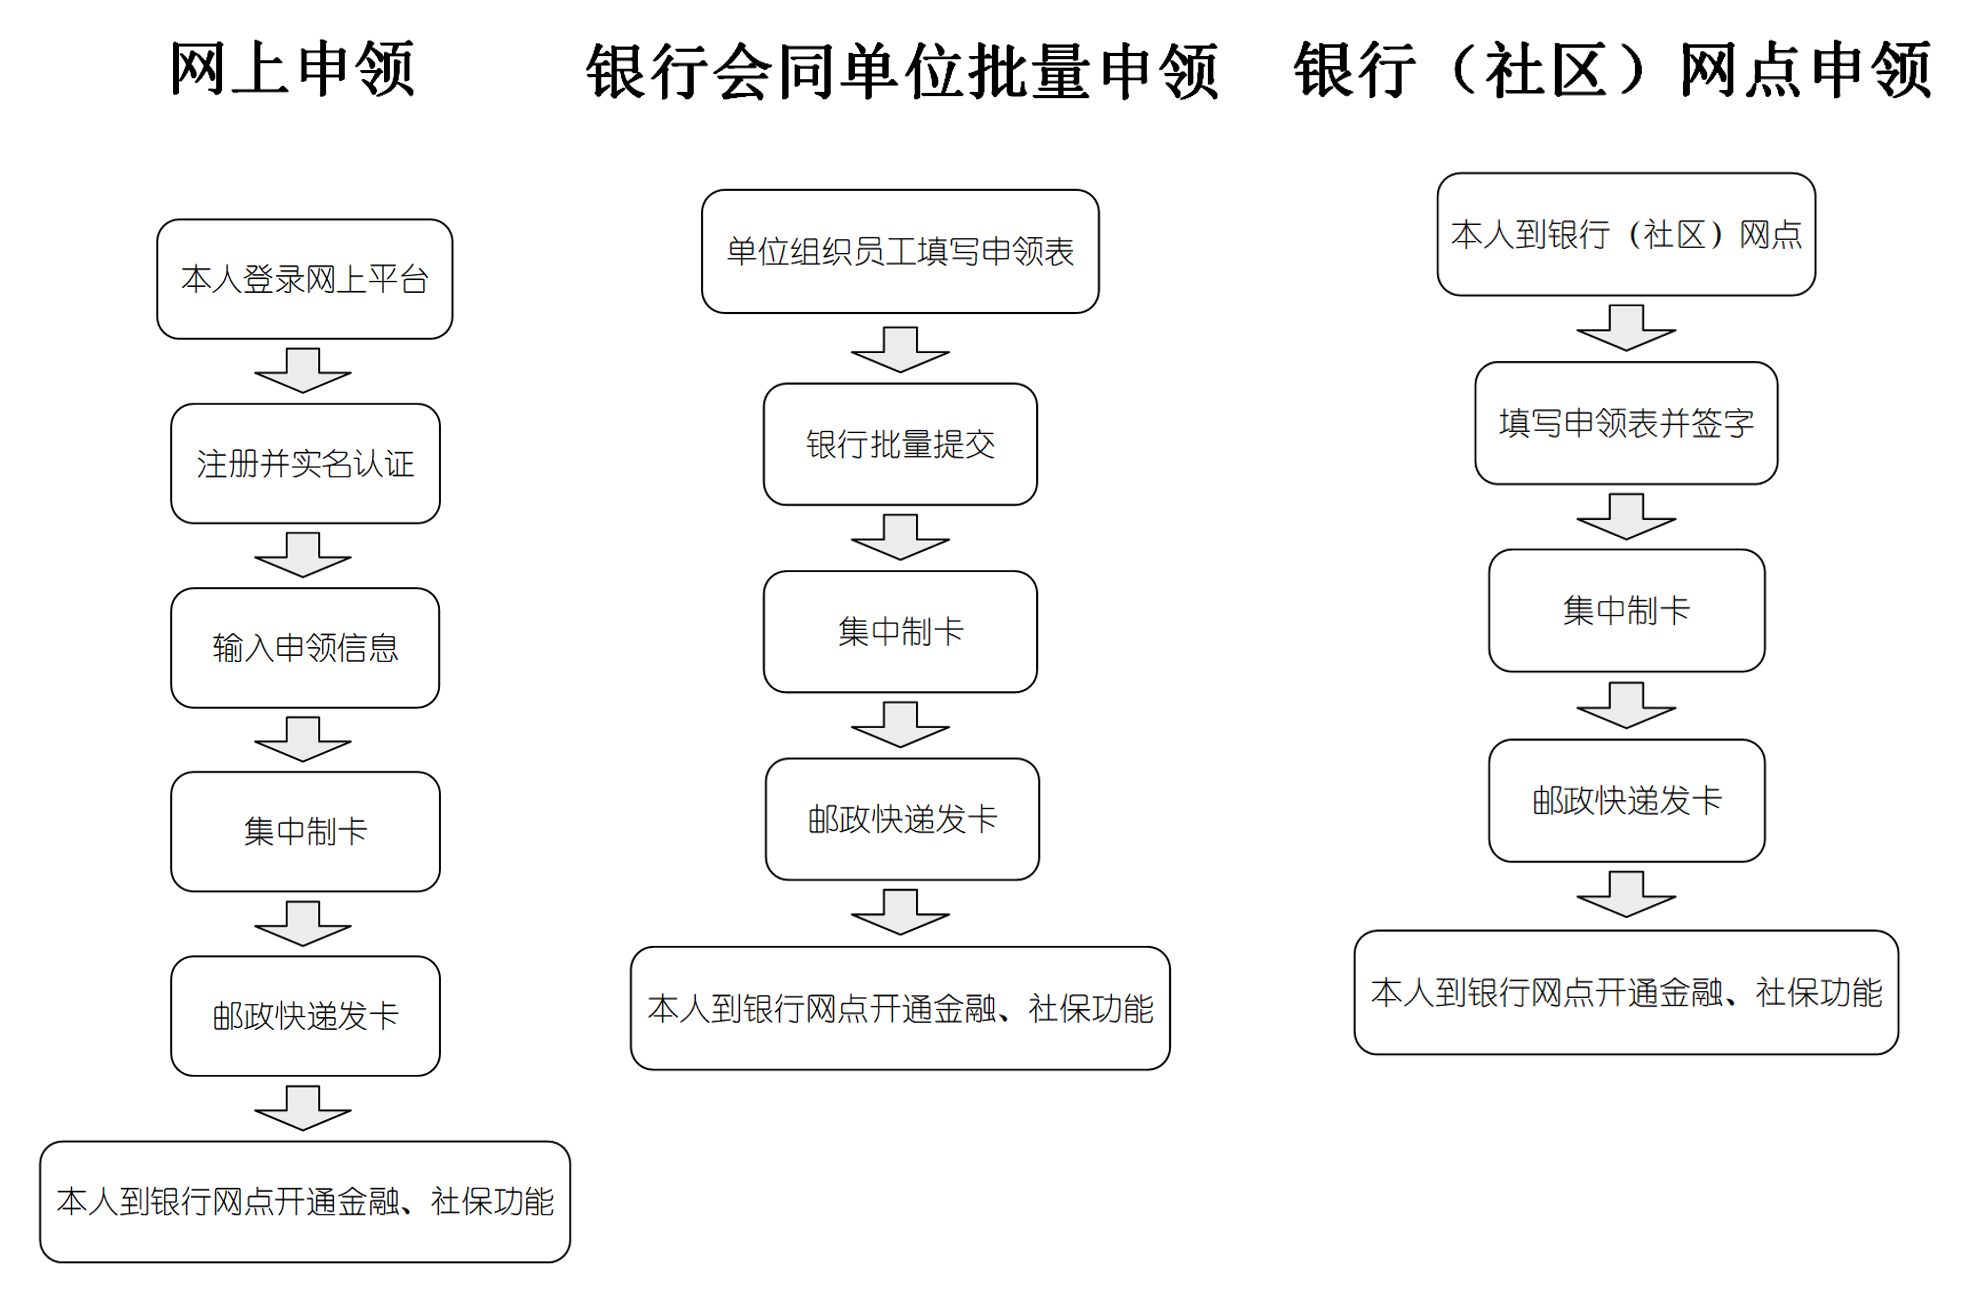 明年1月起上海换发新版社保卡,有何新功能、市